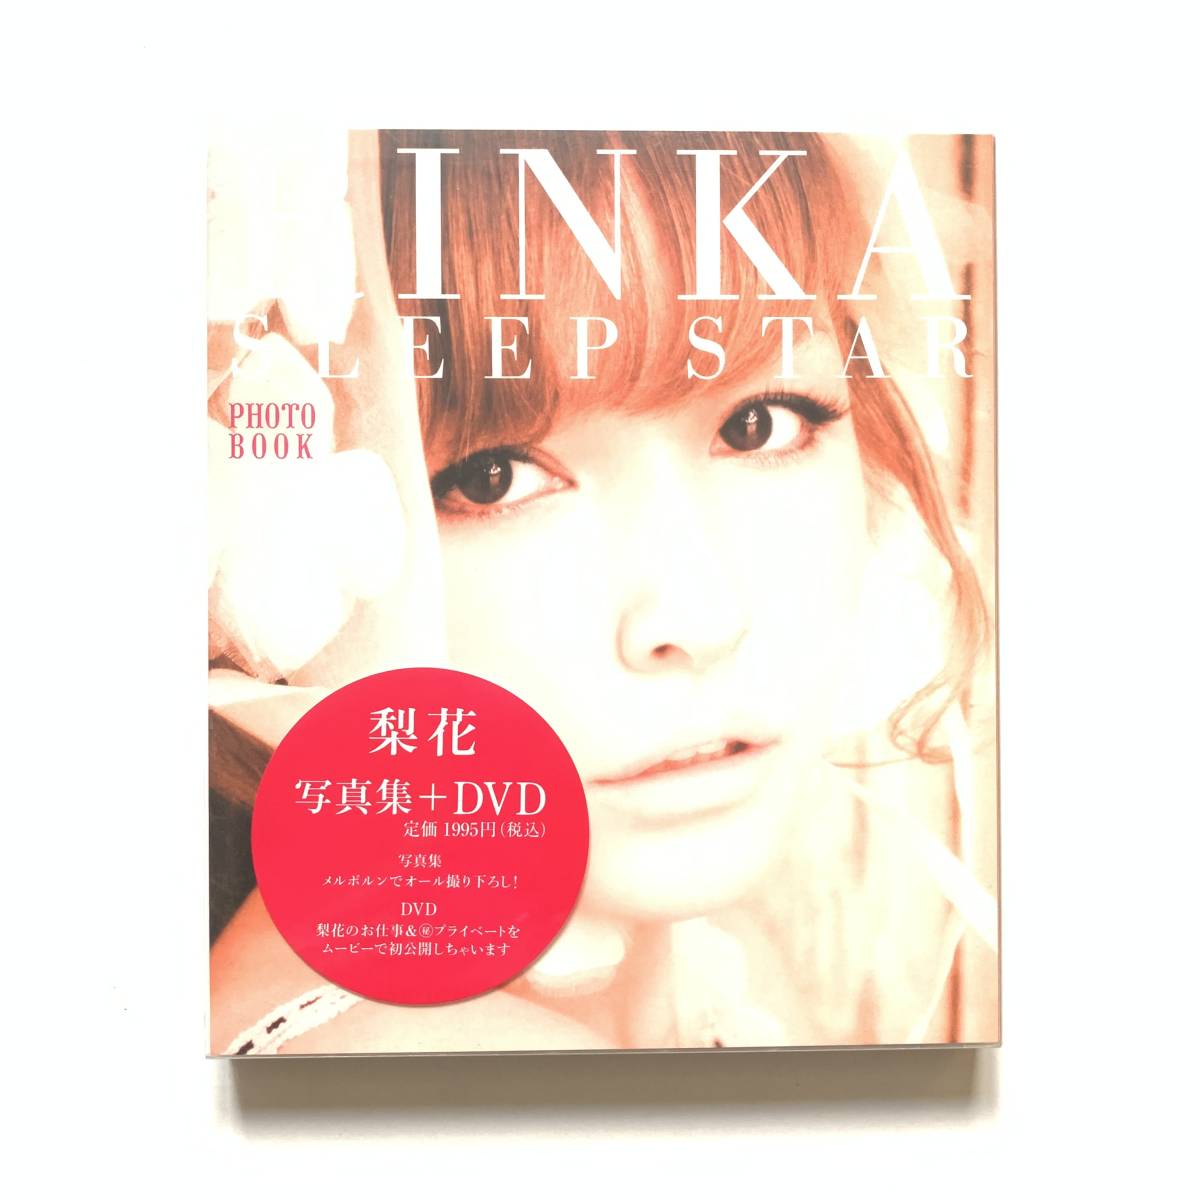 Обратное решение красивых товаров ◆ Сон звезда фото книга (Rika) ◆ Фото книга DVD с rinka